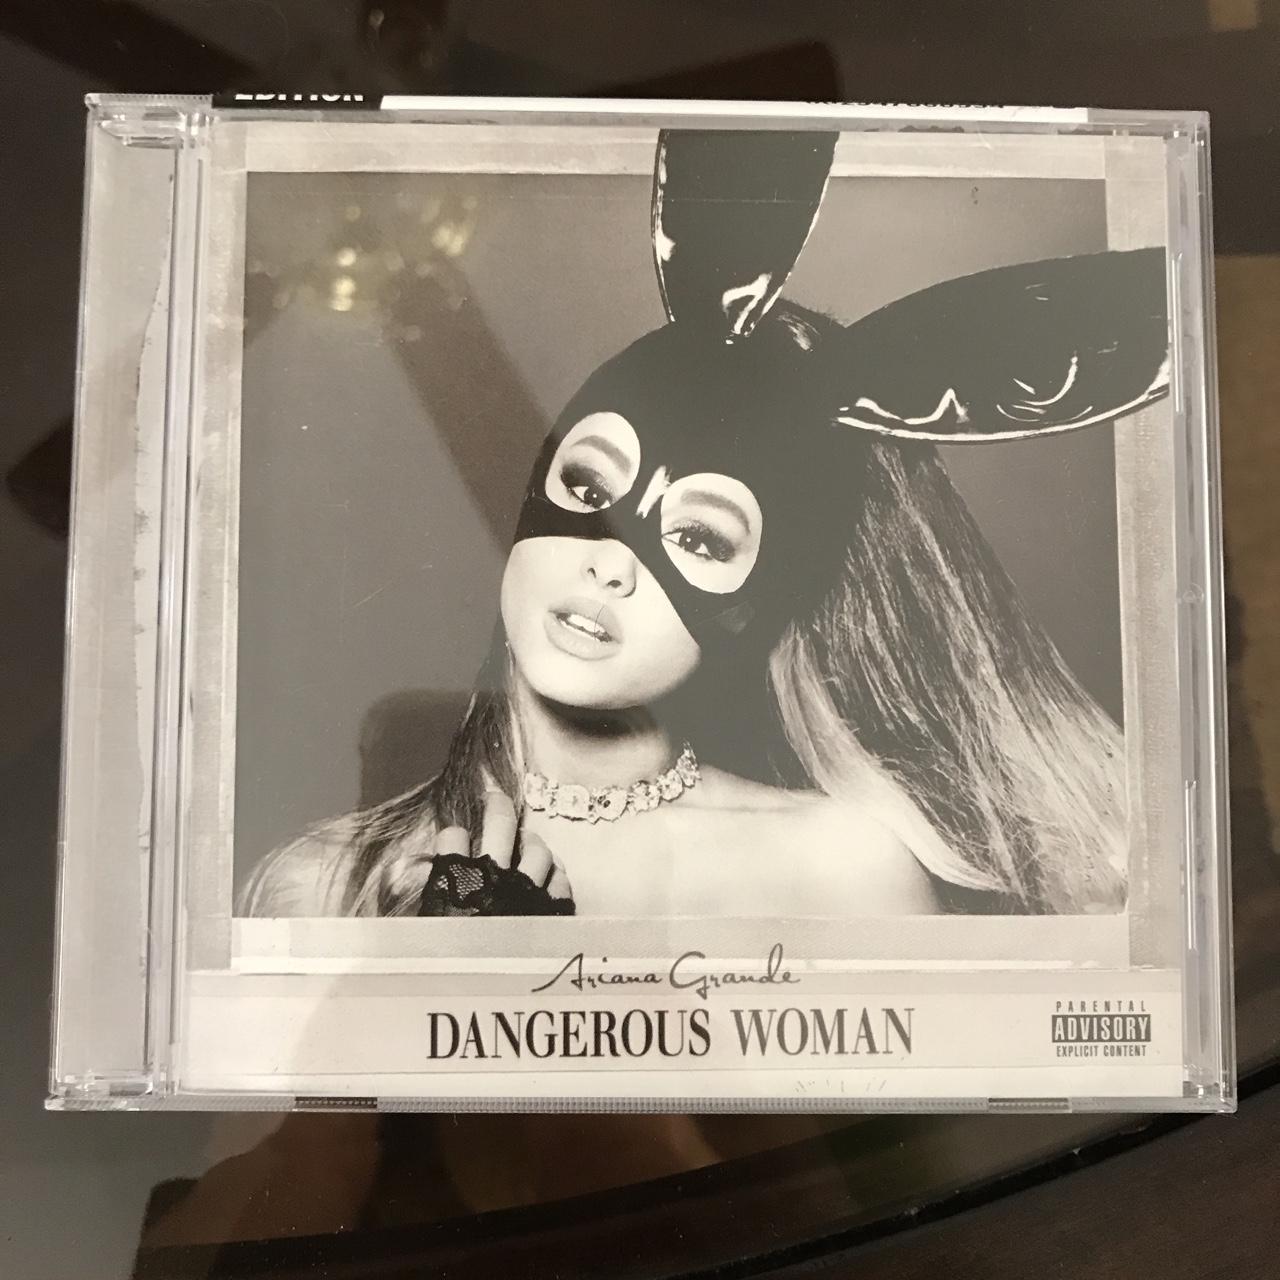 Dangerous Woman Explicit Version CD